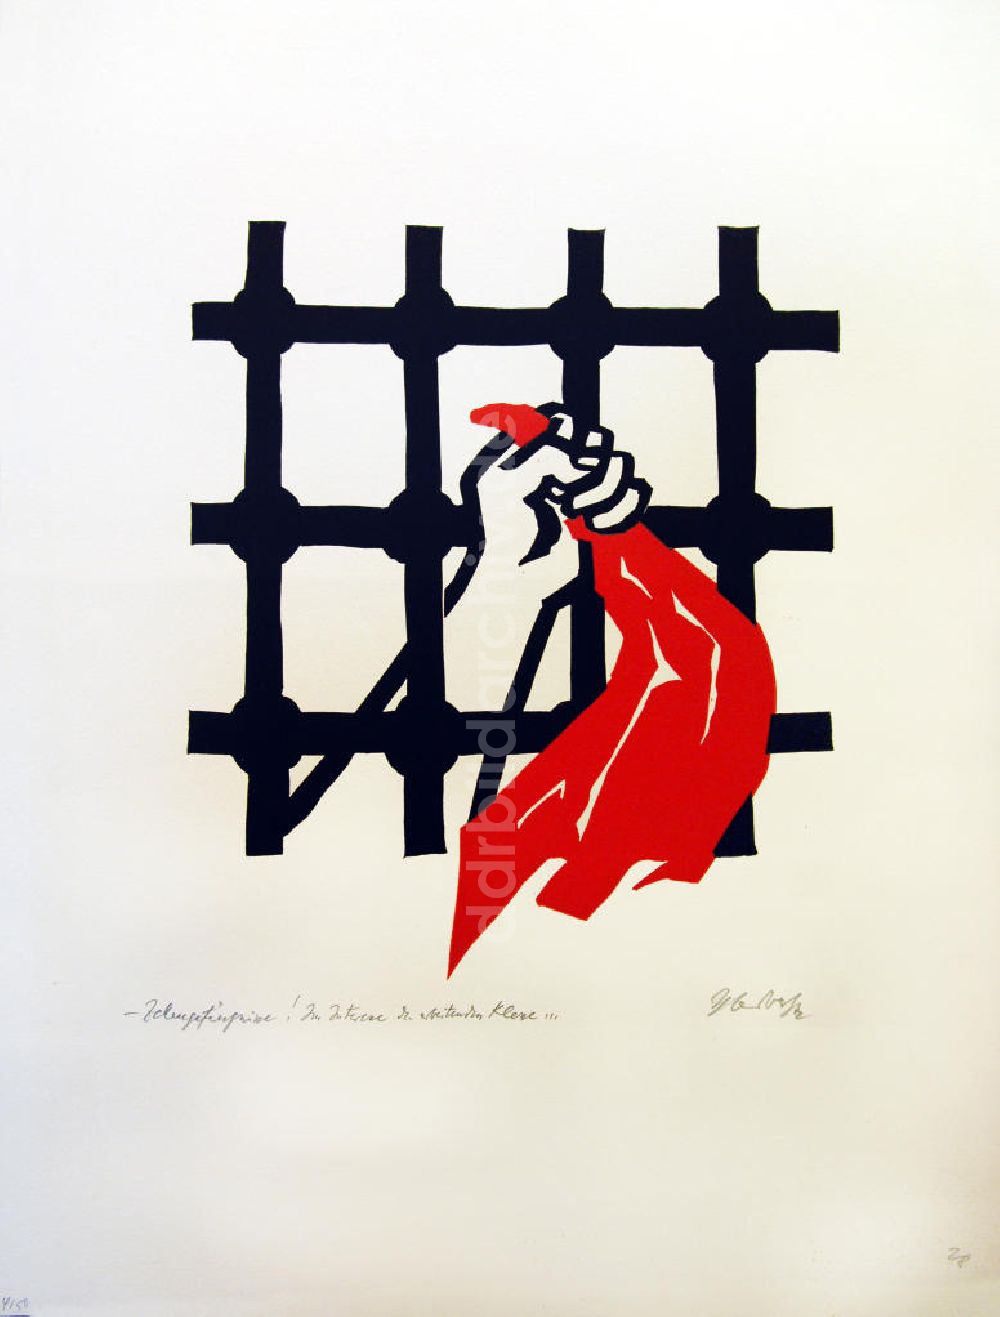 DDR-Fotoarchiv: Berlin - Grafik von Herbert Sandberg Motiv 28 aus dem Zyklus Bilder zum Kommunistischen Manifest aus dem Jahr 1972